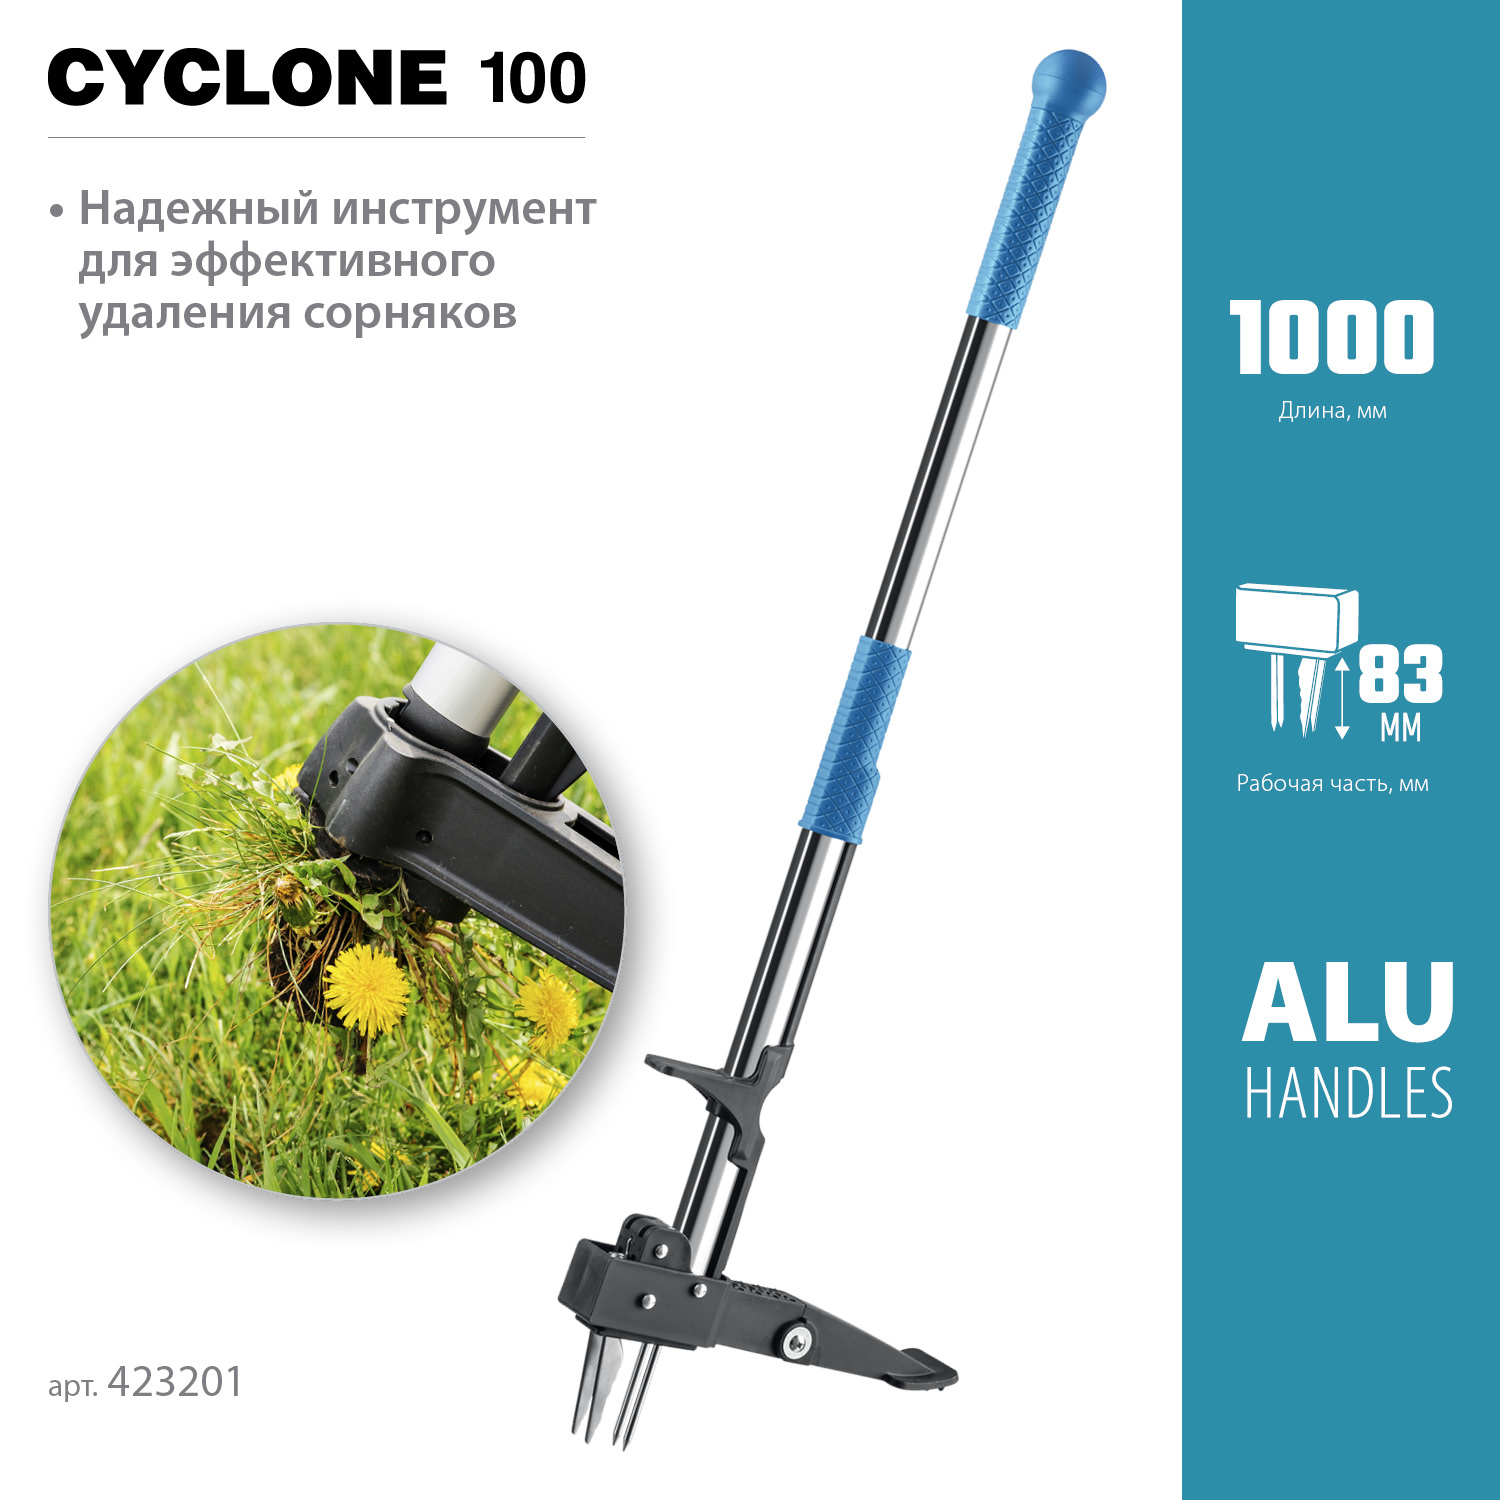 GRINDA CYCLONE-100, длина 1000 мм, алюминиевый корпус, оксидированное покрытие, механический удалитель сорняков, PROLine (423201)